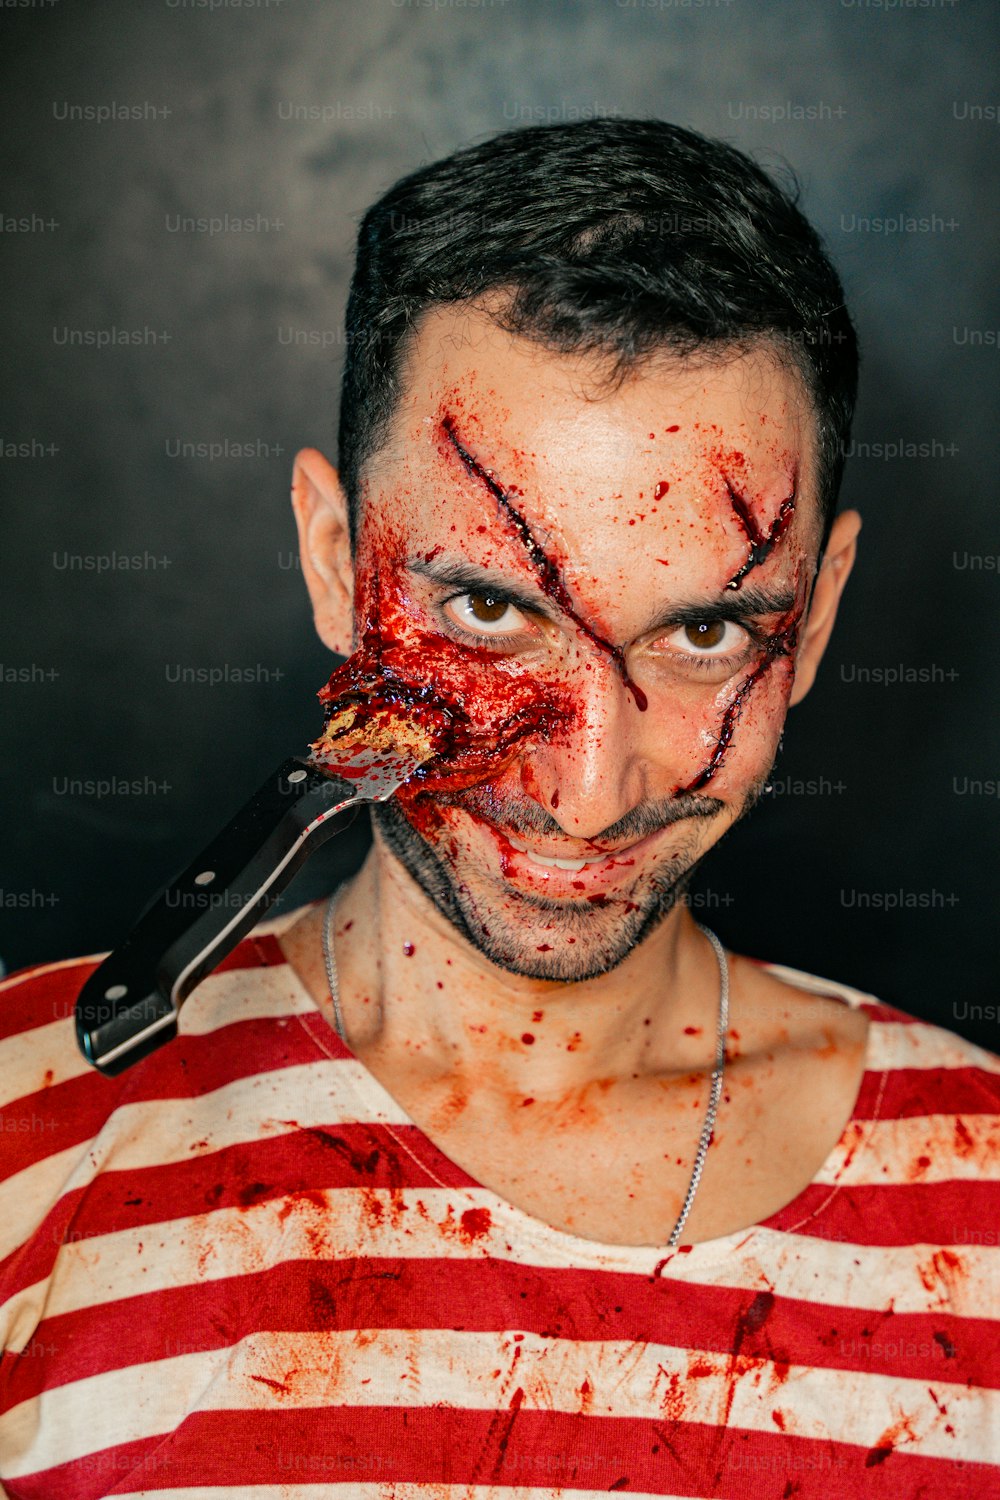 Ein Mann mit einem Messer im Mund und Blut im ganzen Gesicht